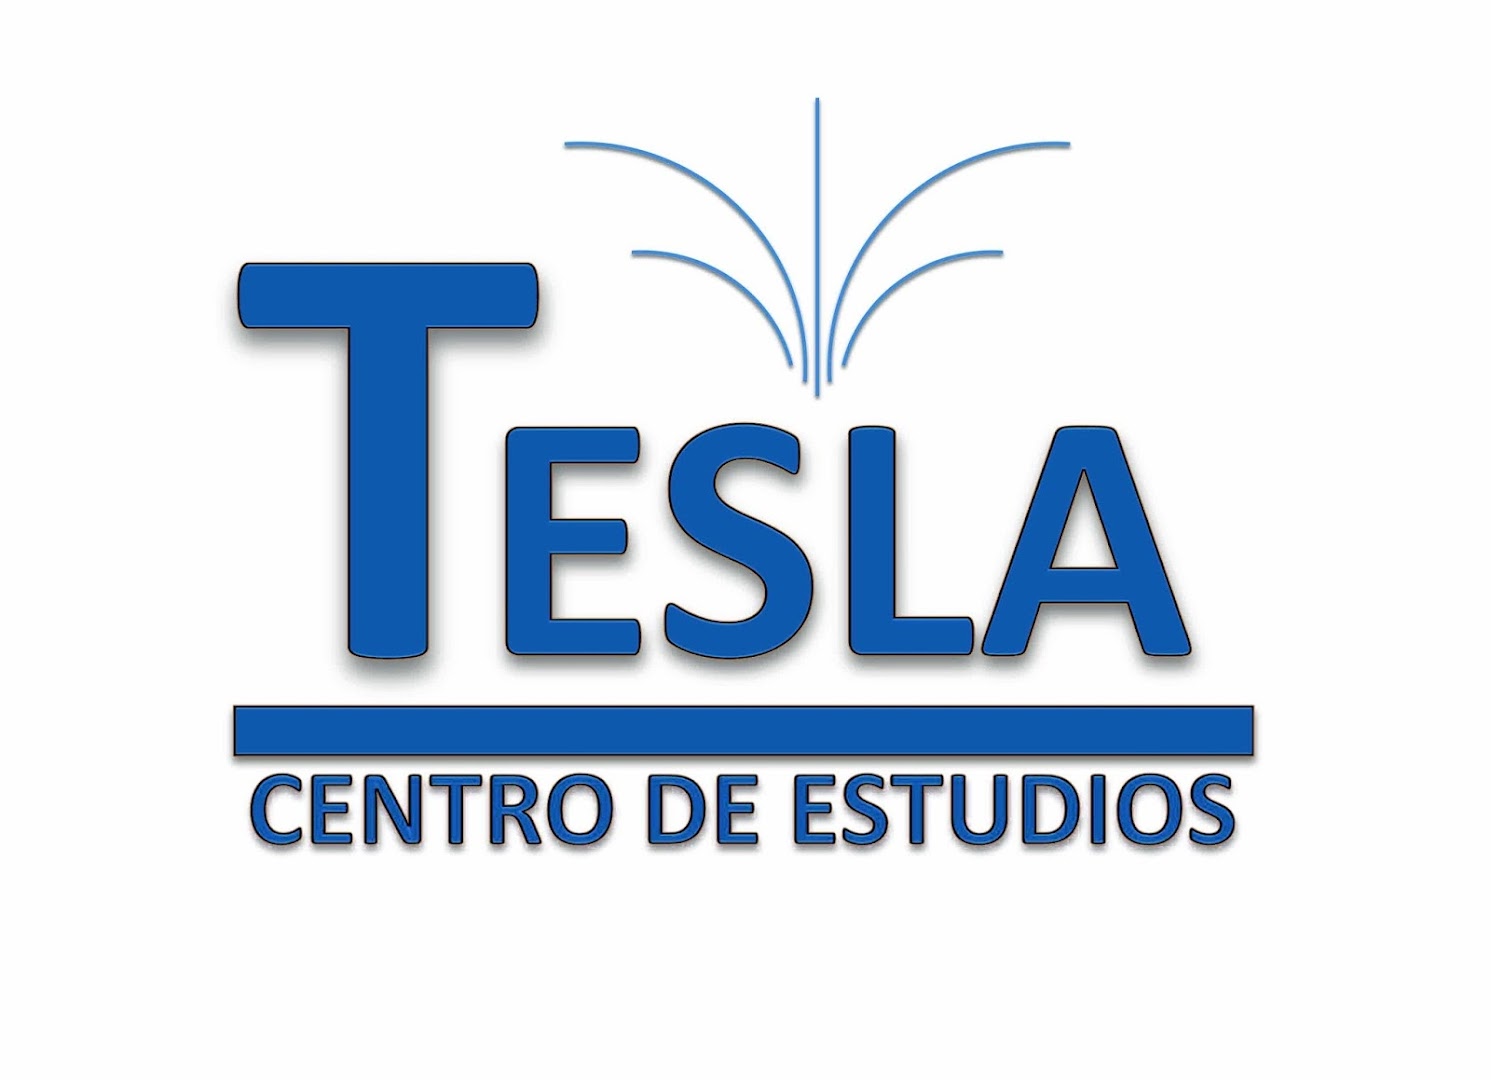 Centro de Estudios Tesla